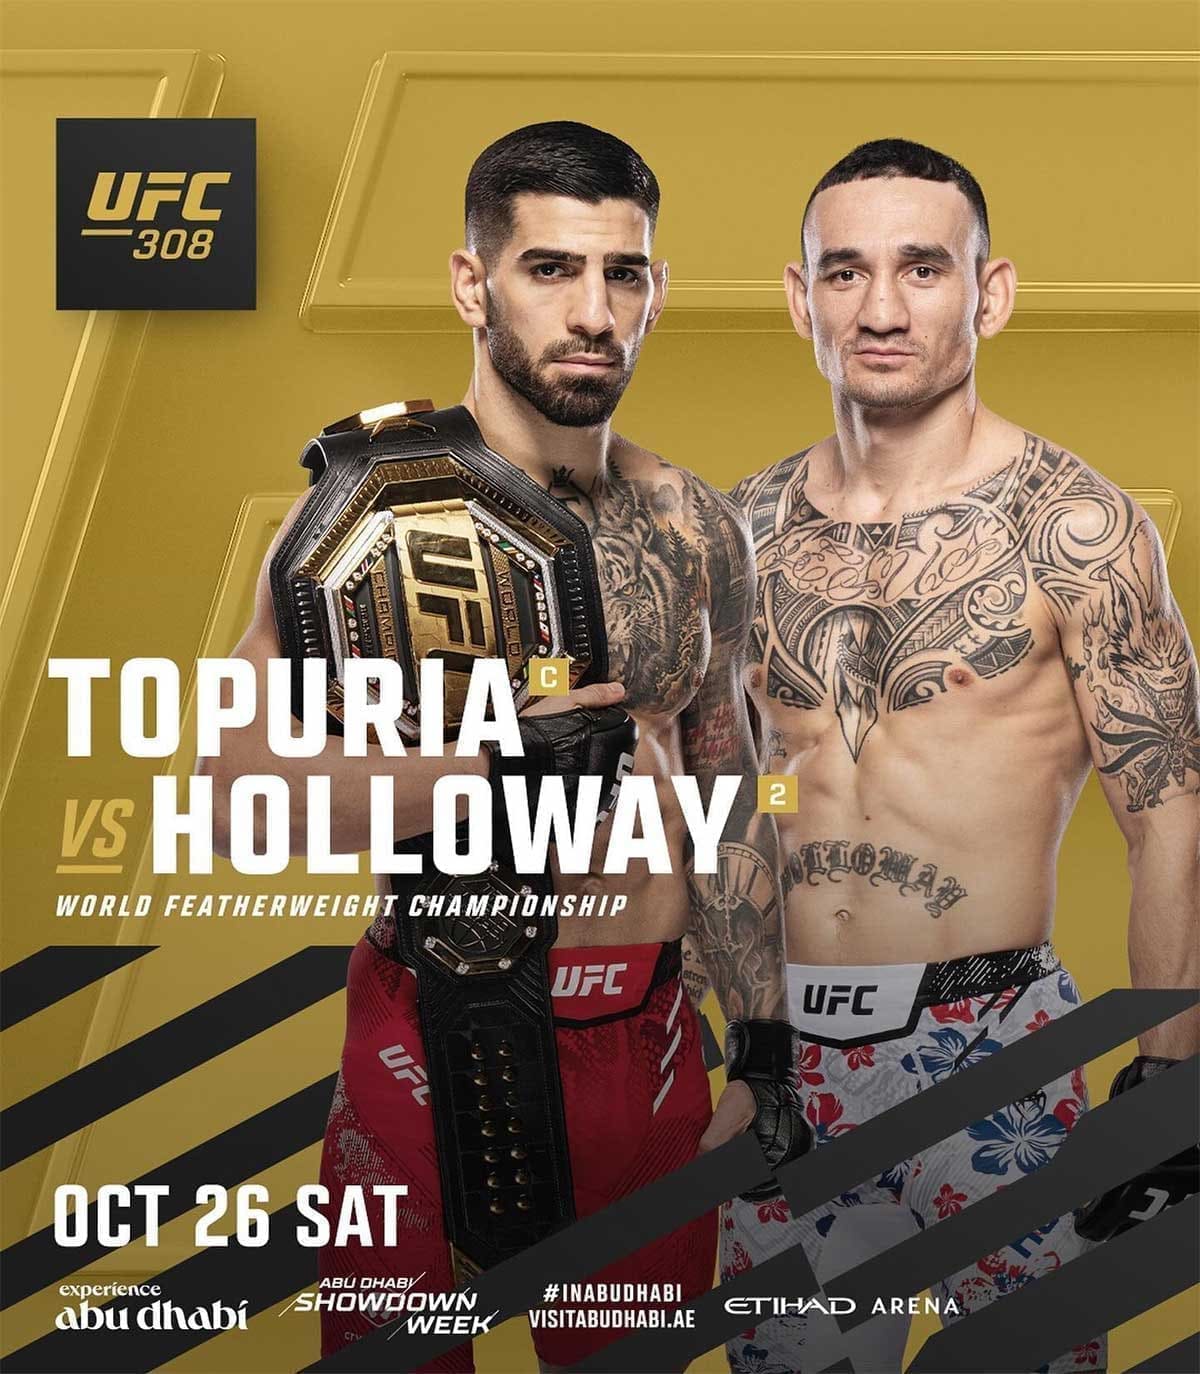 UFC 308: Топурия - Холловэй дата проведения, кард, участники и результаты